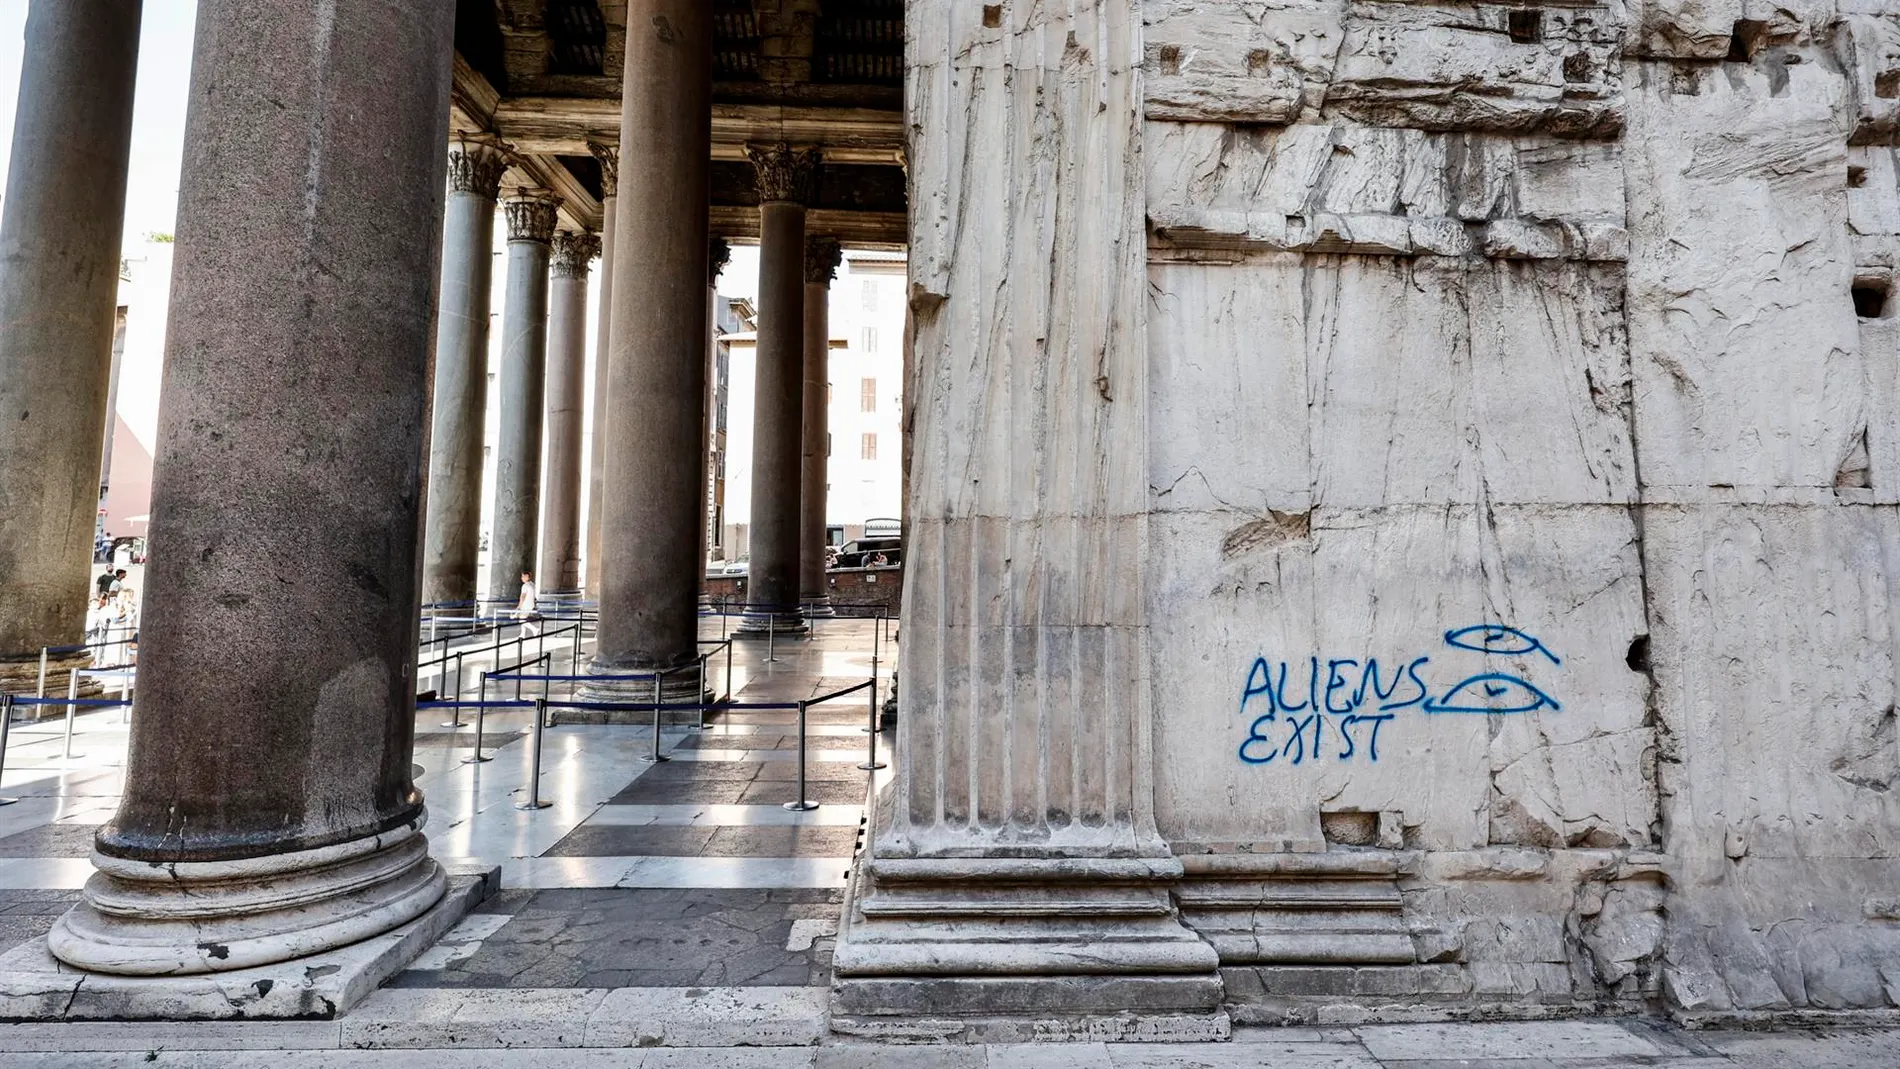 La pintada en los muros del Panteón de Roma